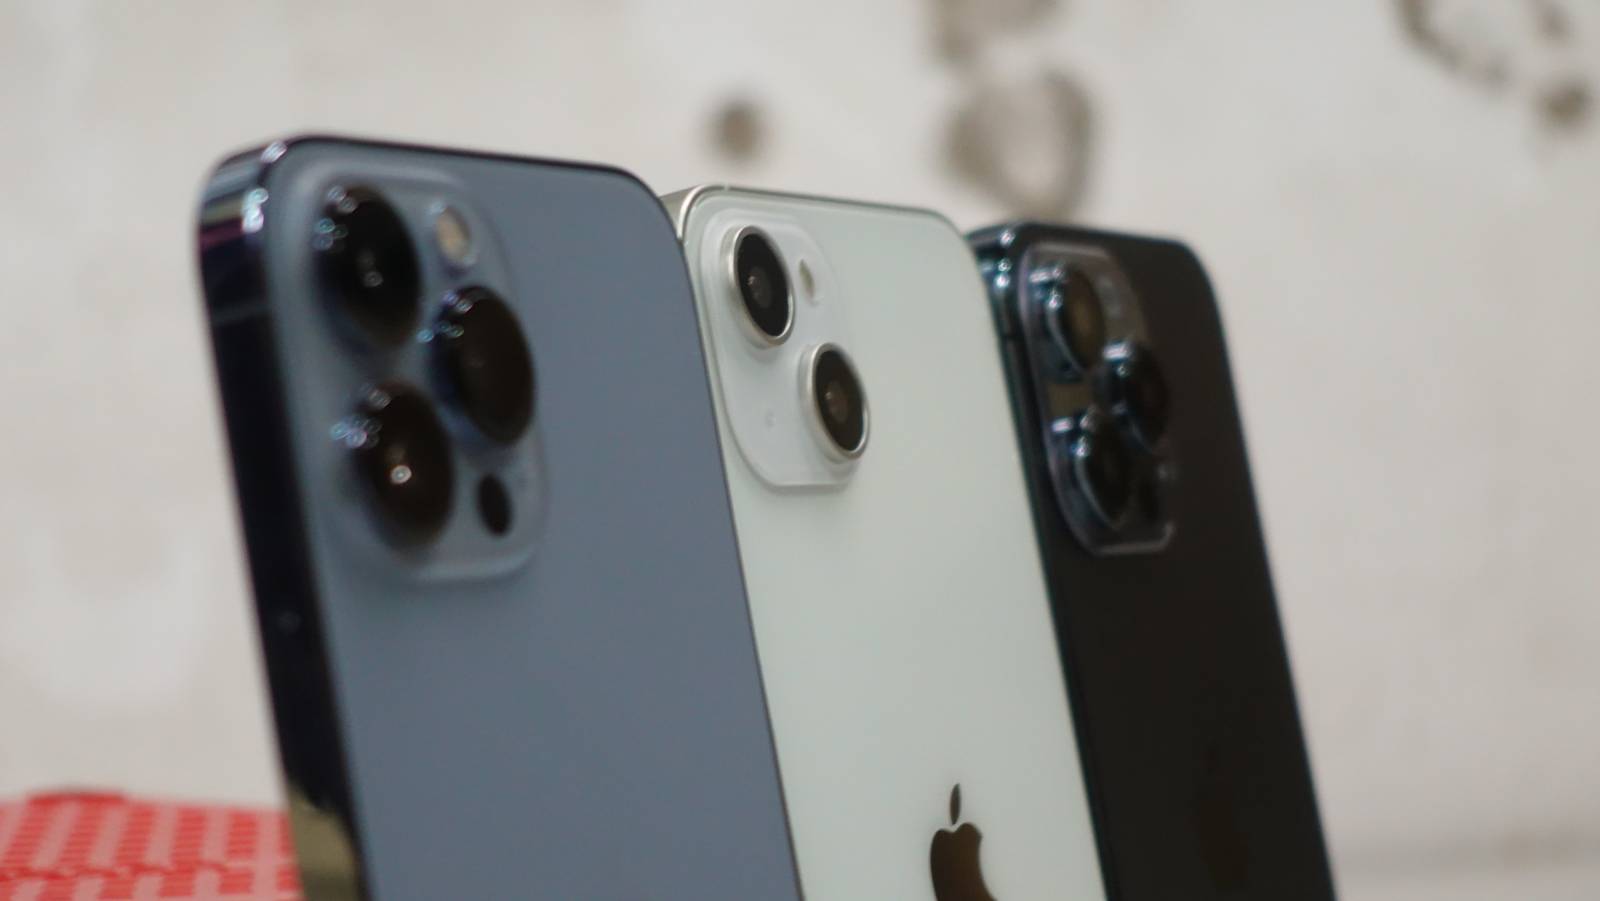 Makiety nowego iPhone'a 14 przedstawiają oczekiwany projekt Apple